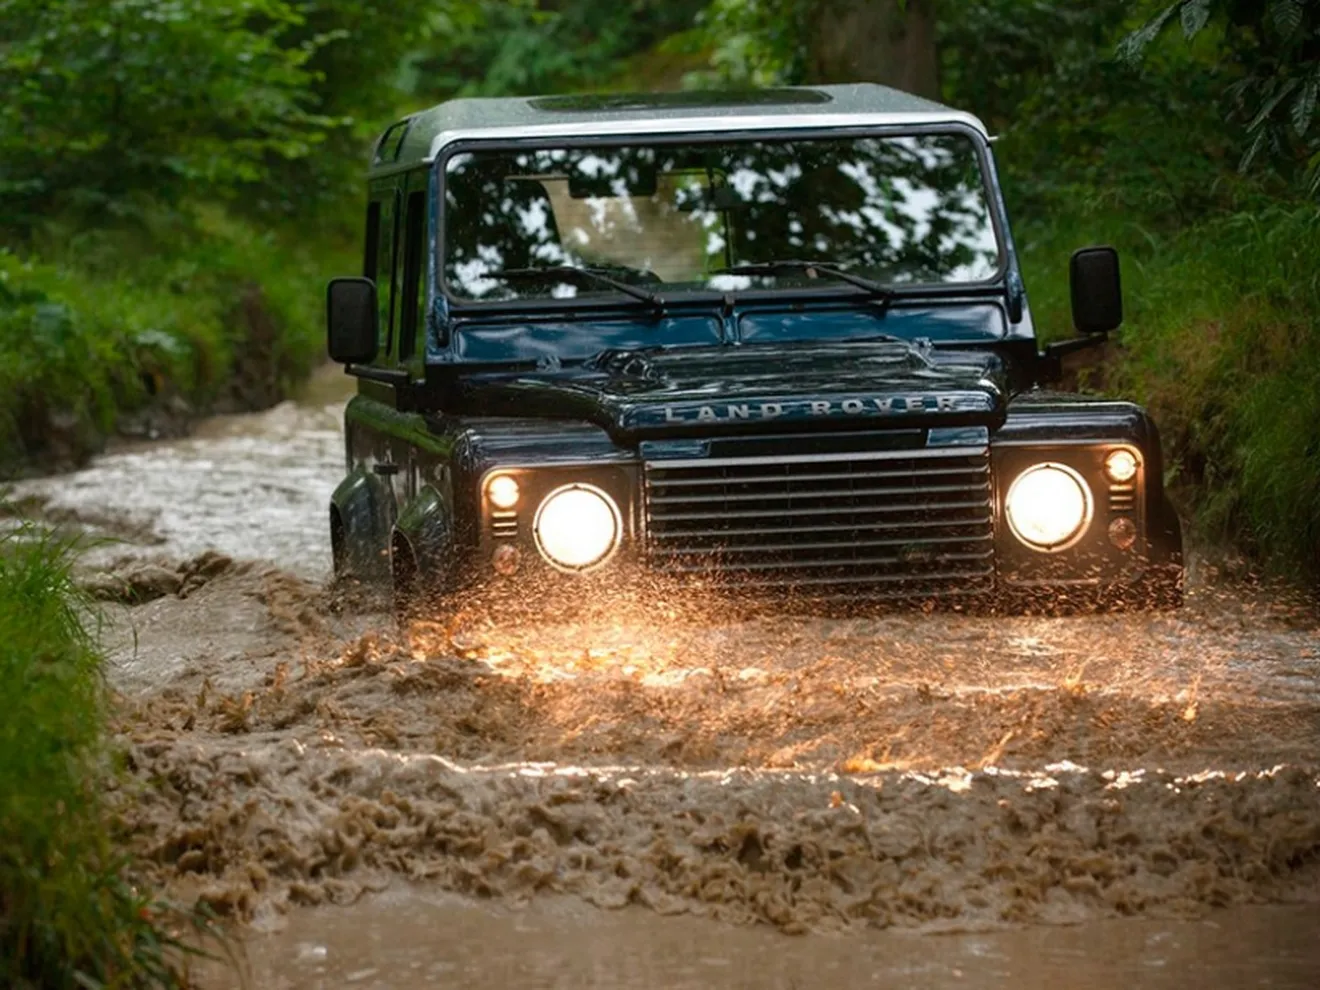 El Land Rover Defender sufrirá el tratamiento SVR